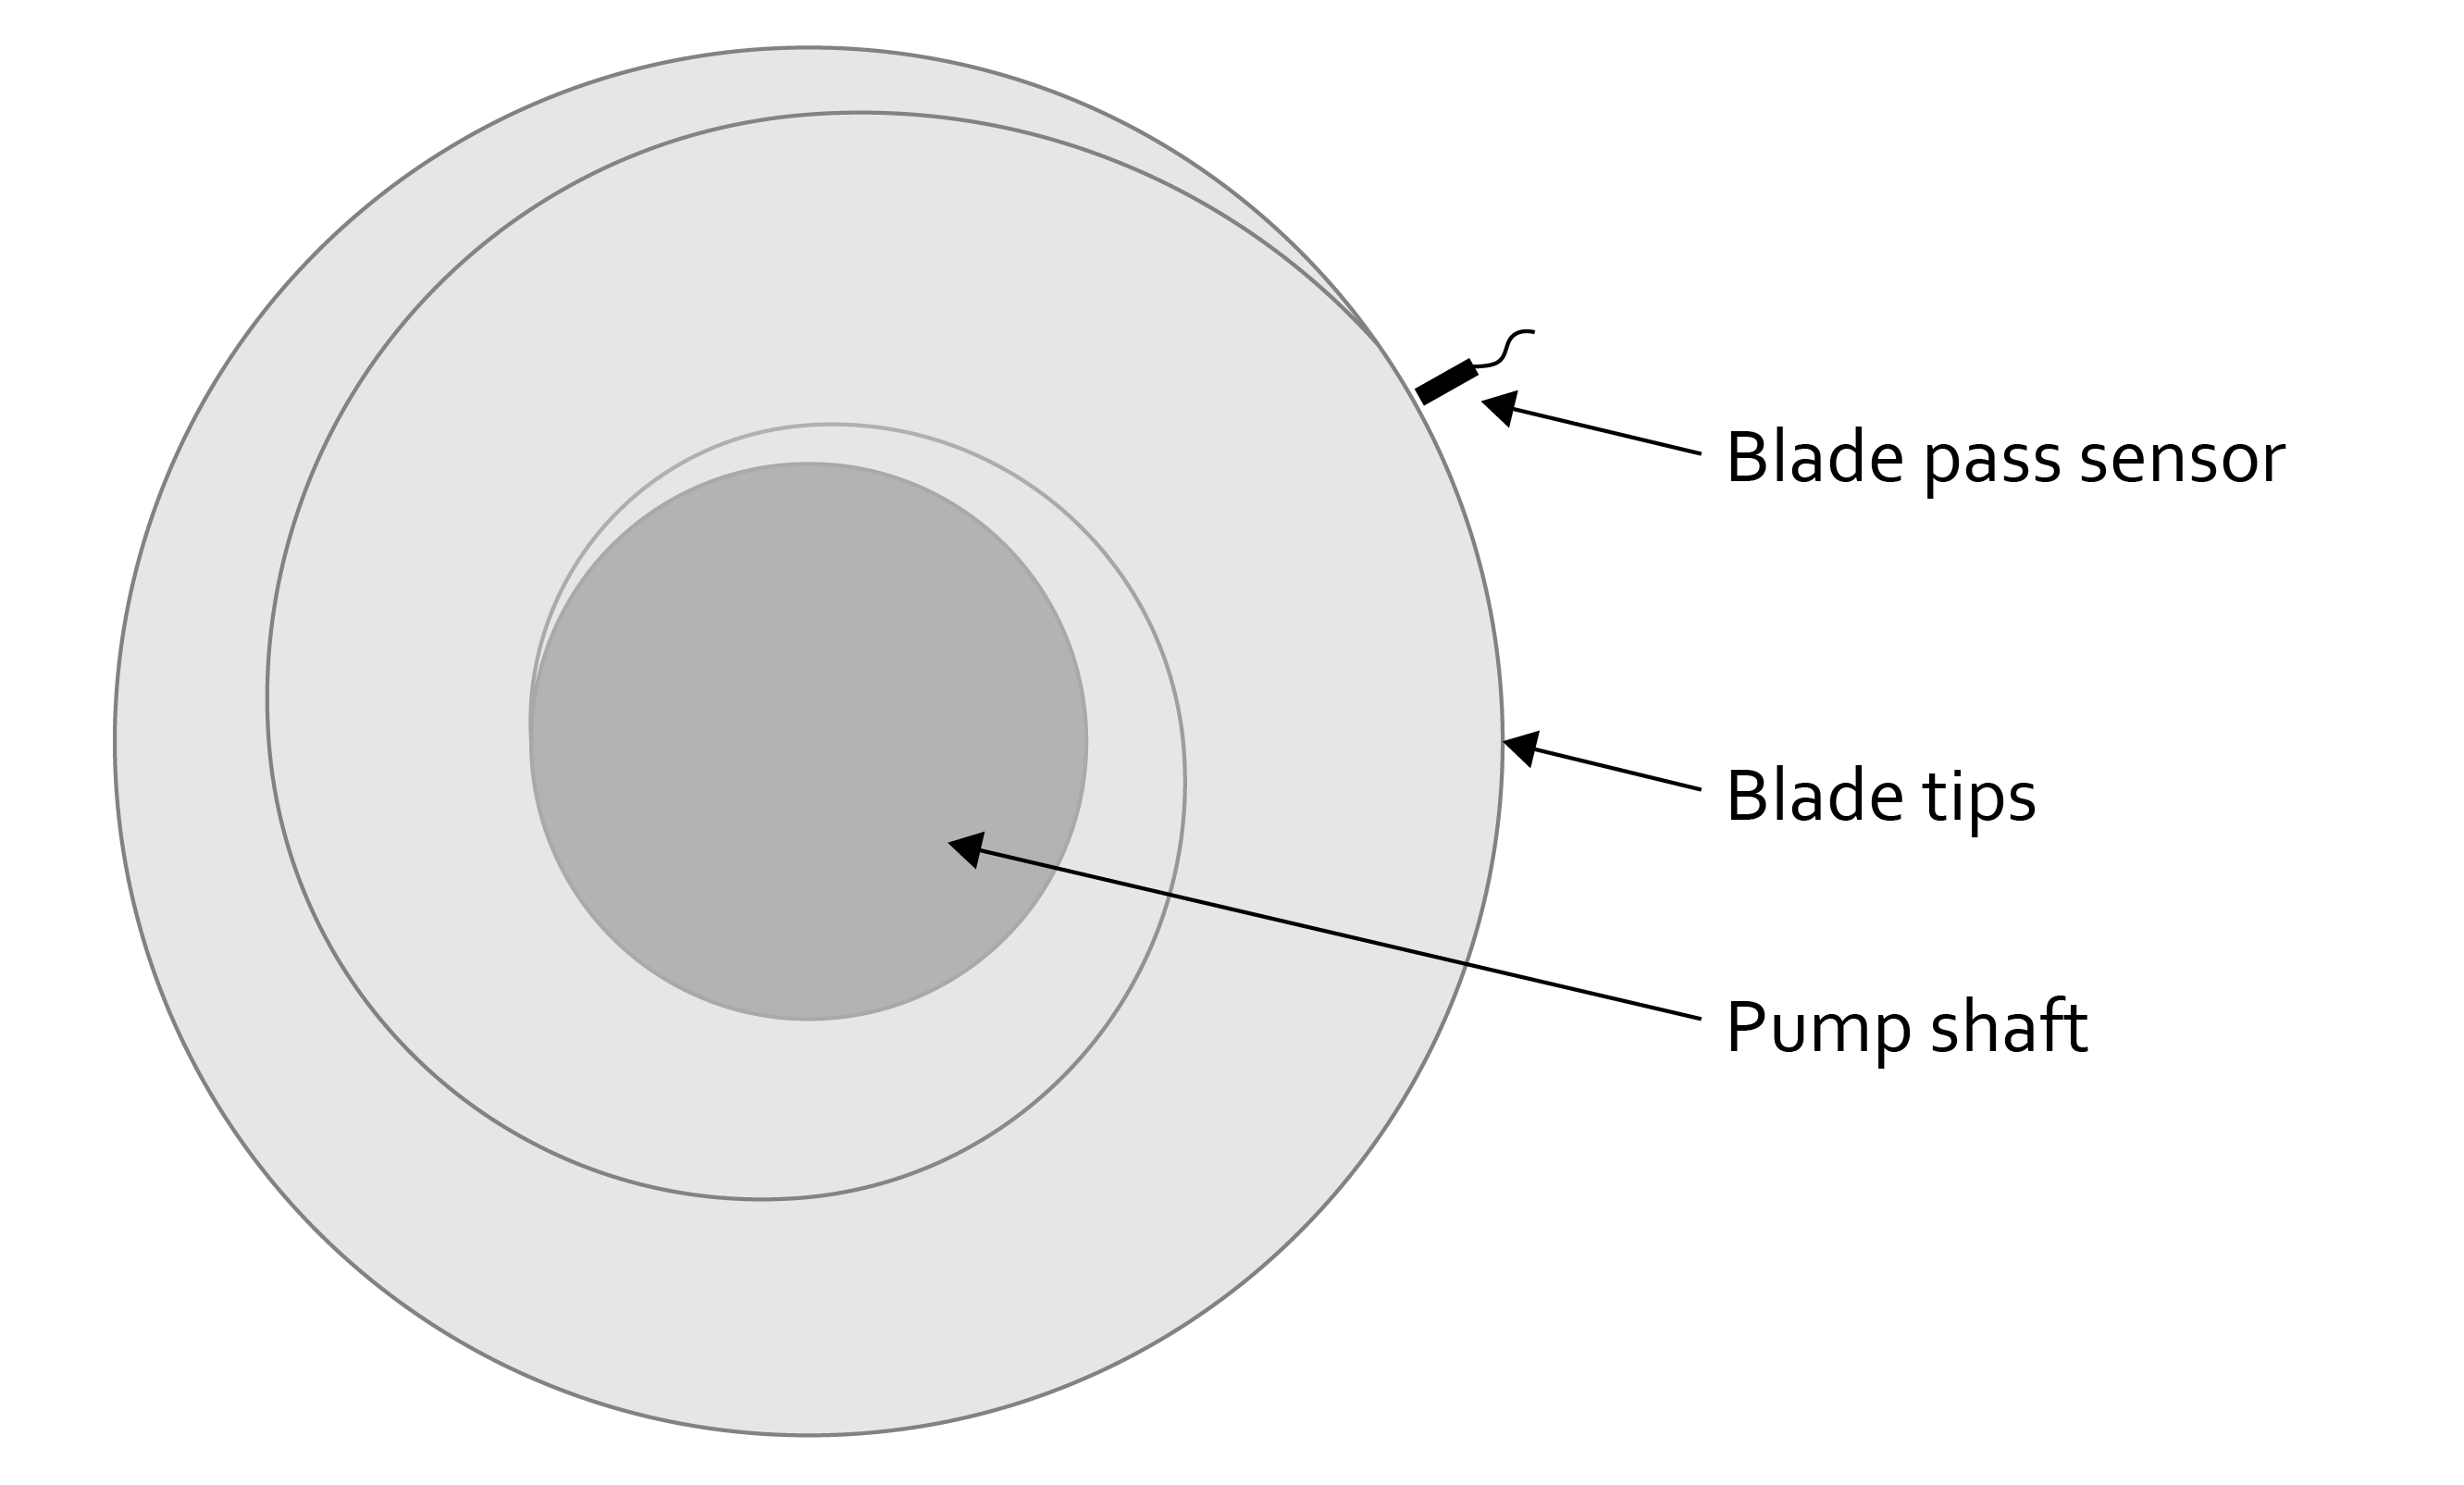 Diagramma della vista dall'alto del rilevamento del passaggio della lama